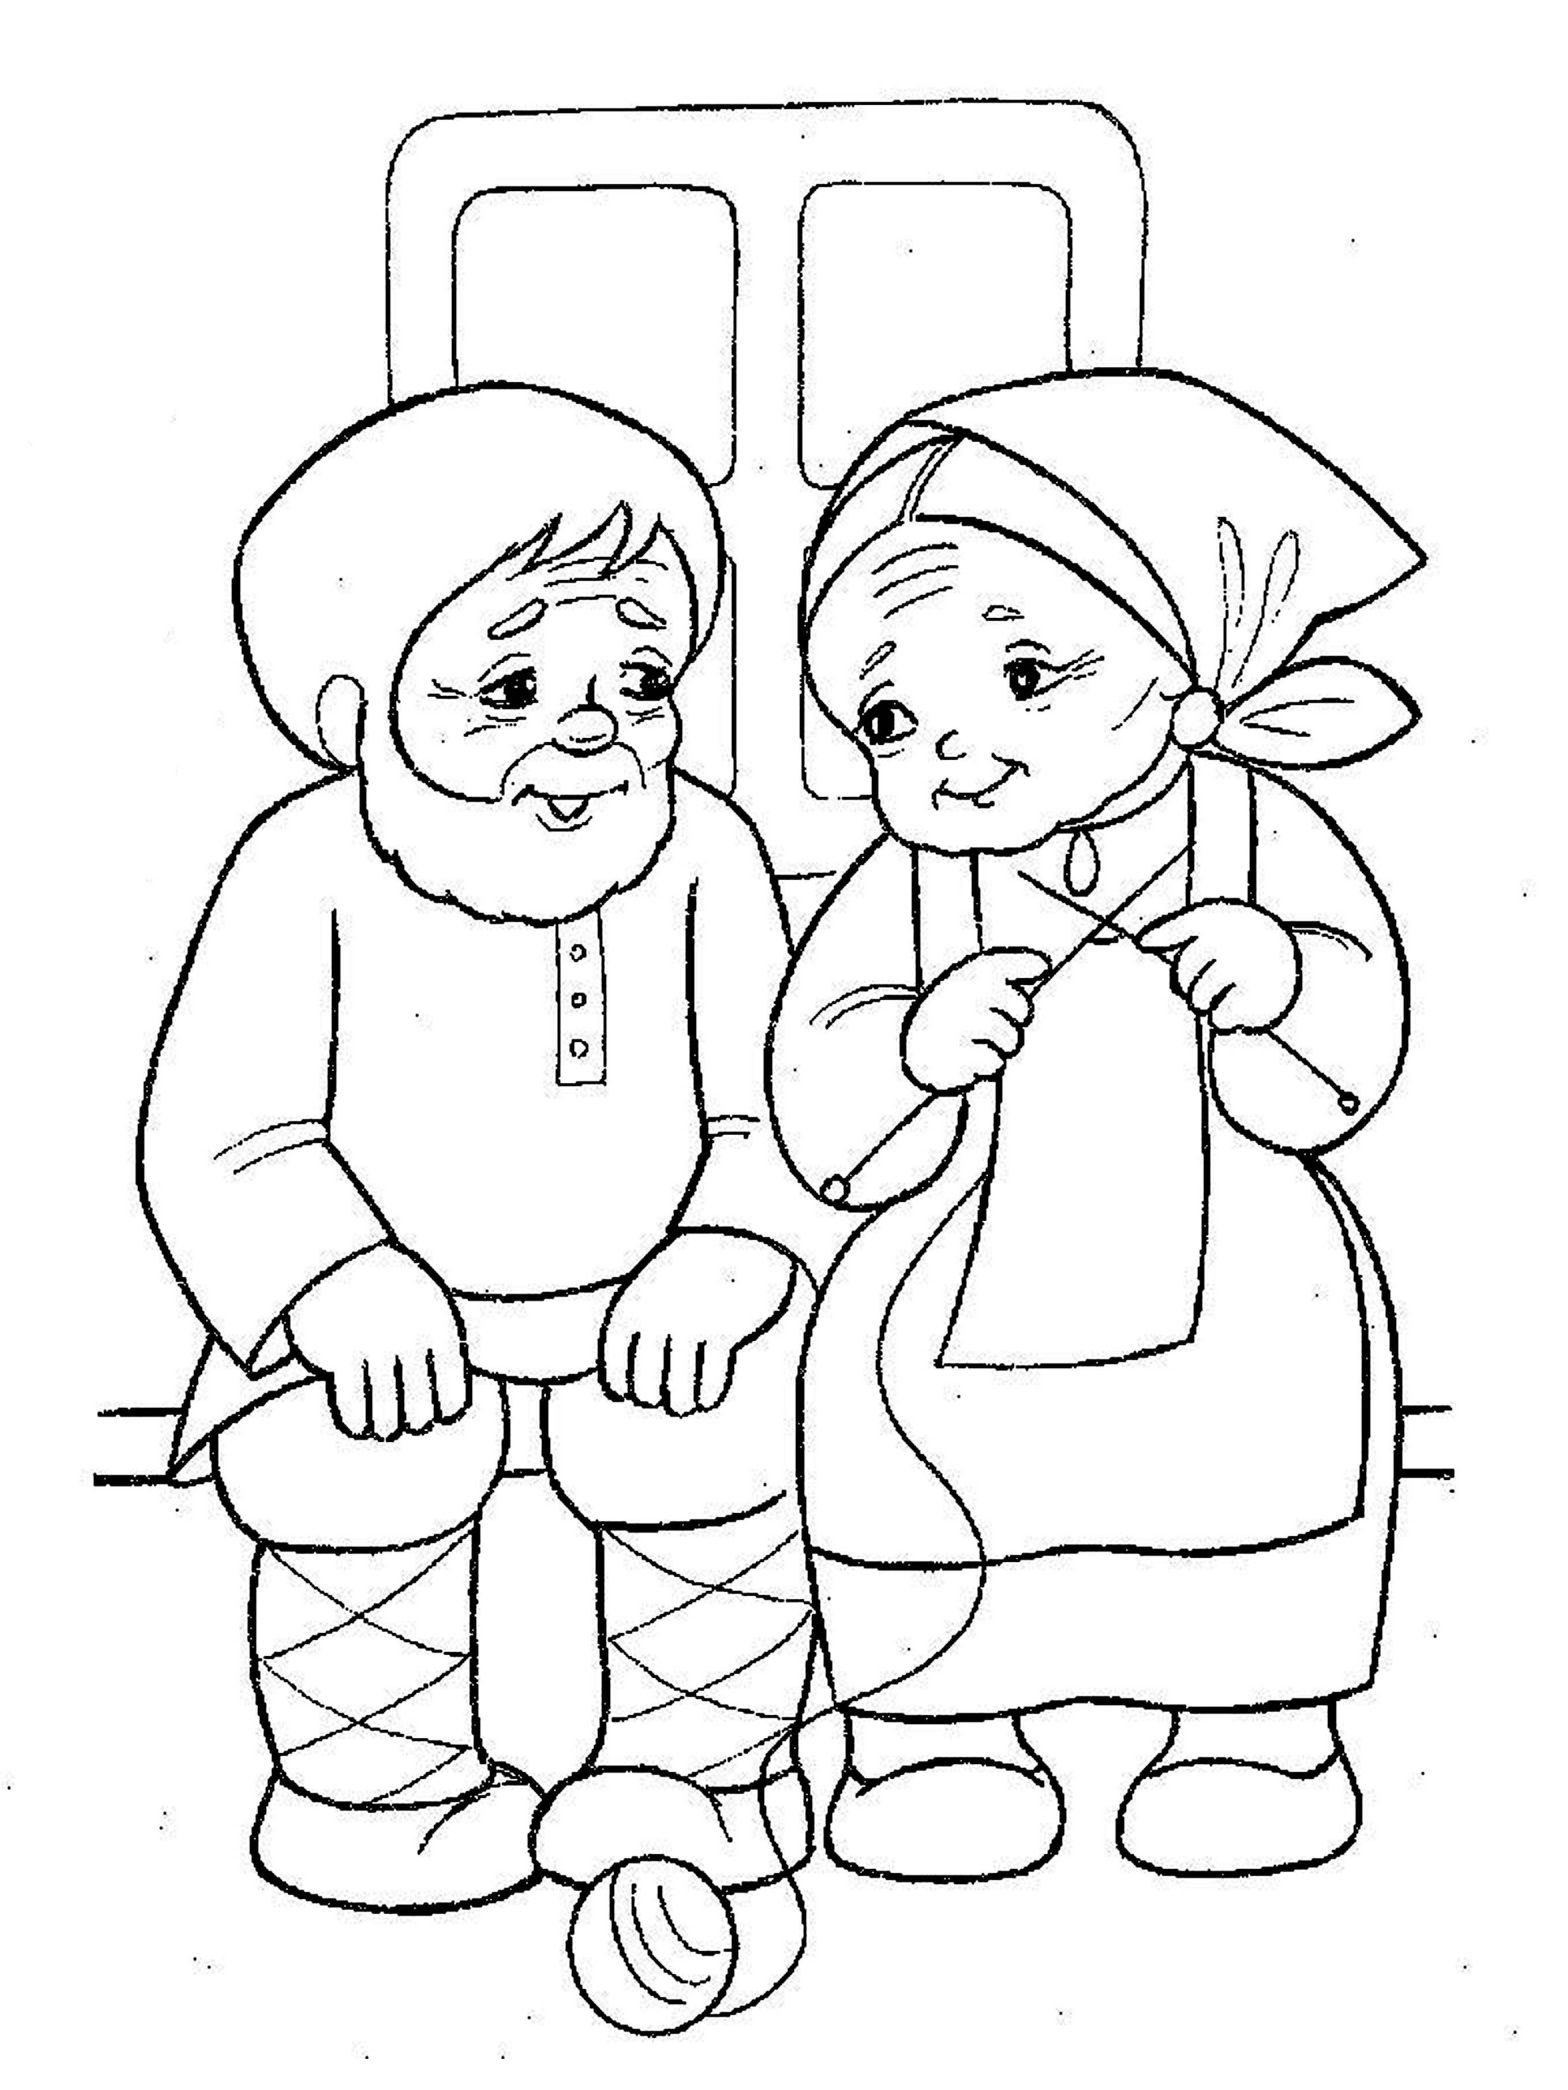 Раскраски к сказке Колобок - бесплатные раскраски для детей (колобок)